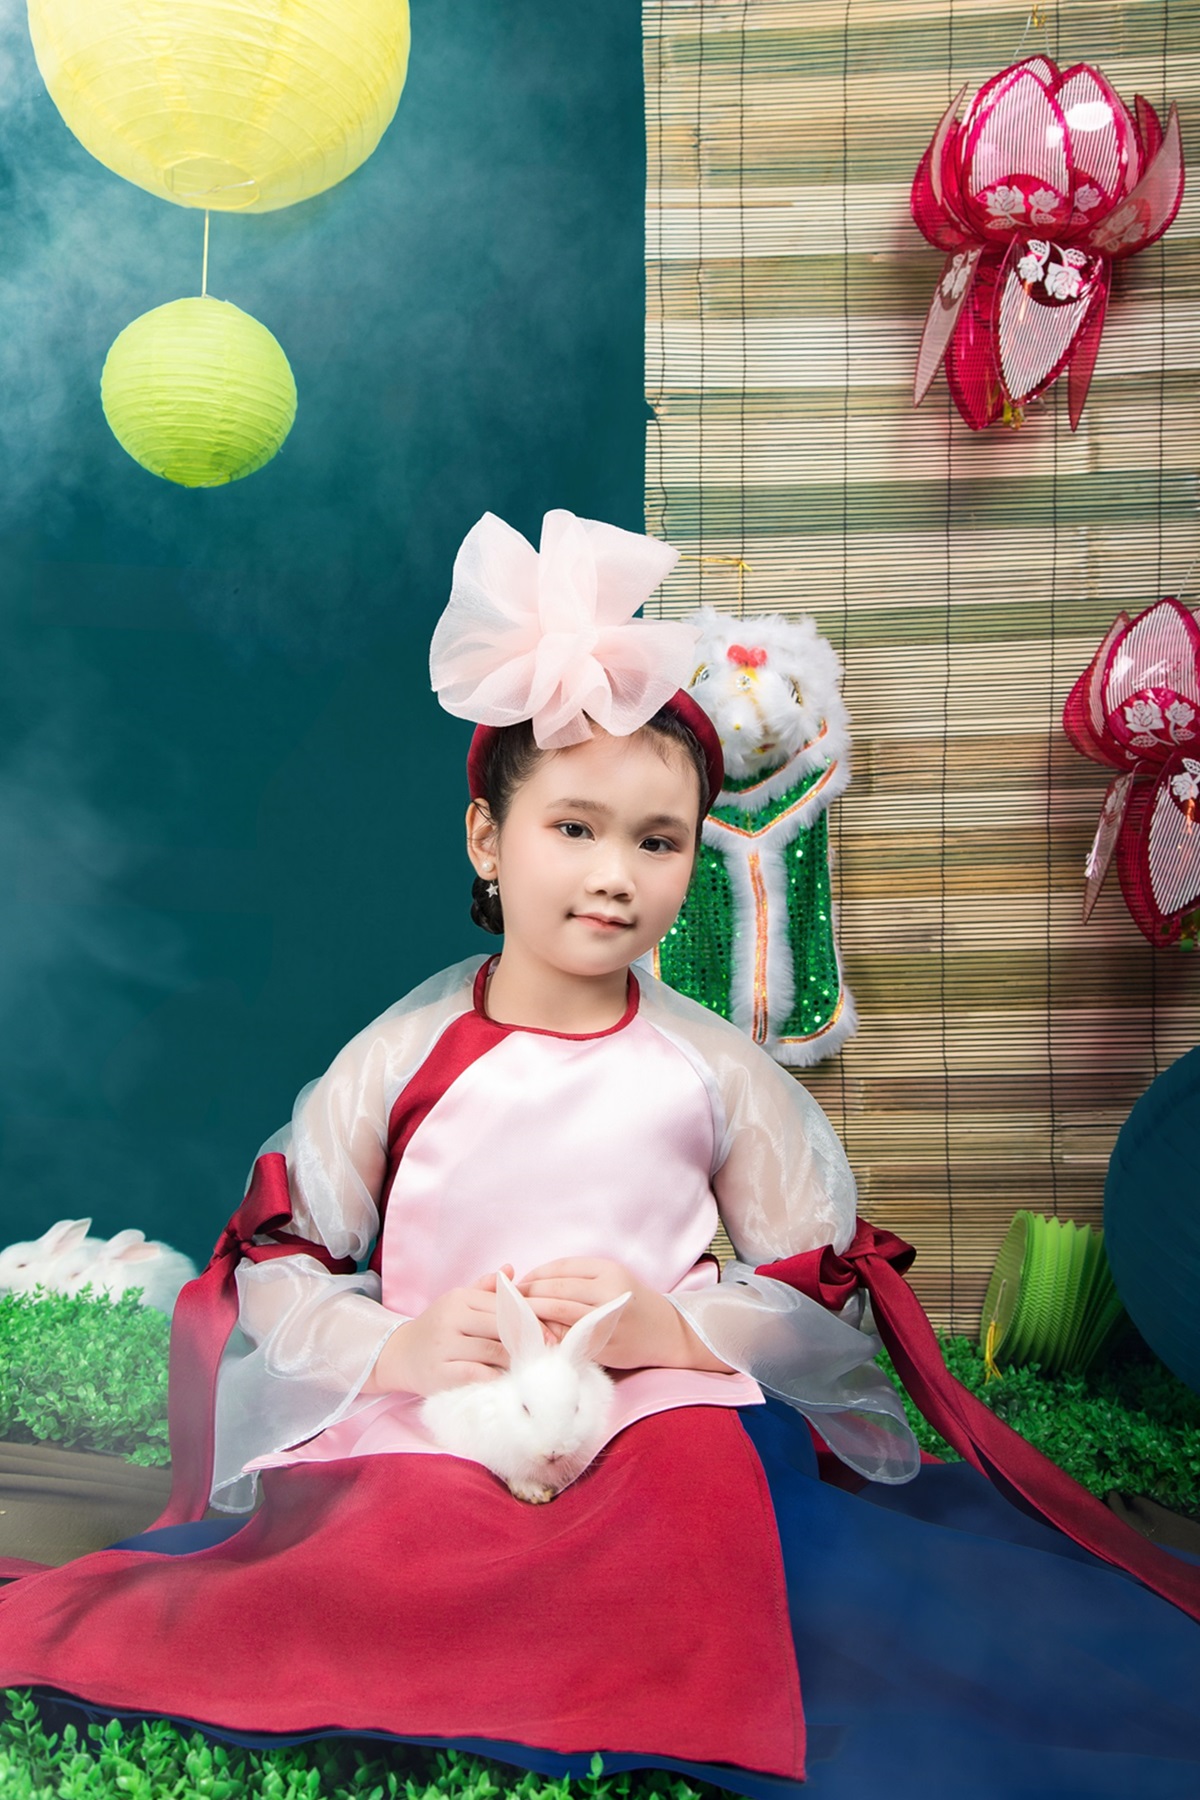  Sắc hồng pastel ở thân áo và hoa gắn trên mấn giúp tôn lên vẻ dịu dàng, dễ thương cho bé gái.